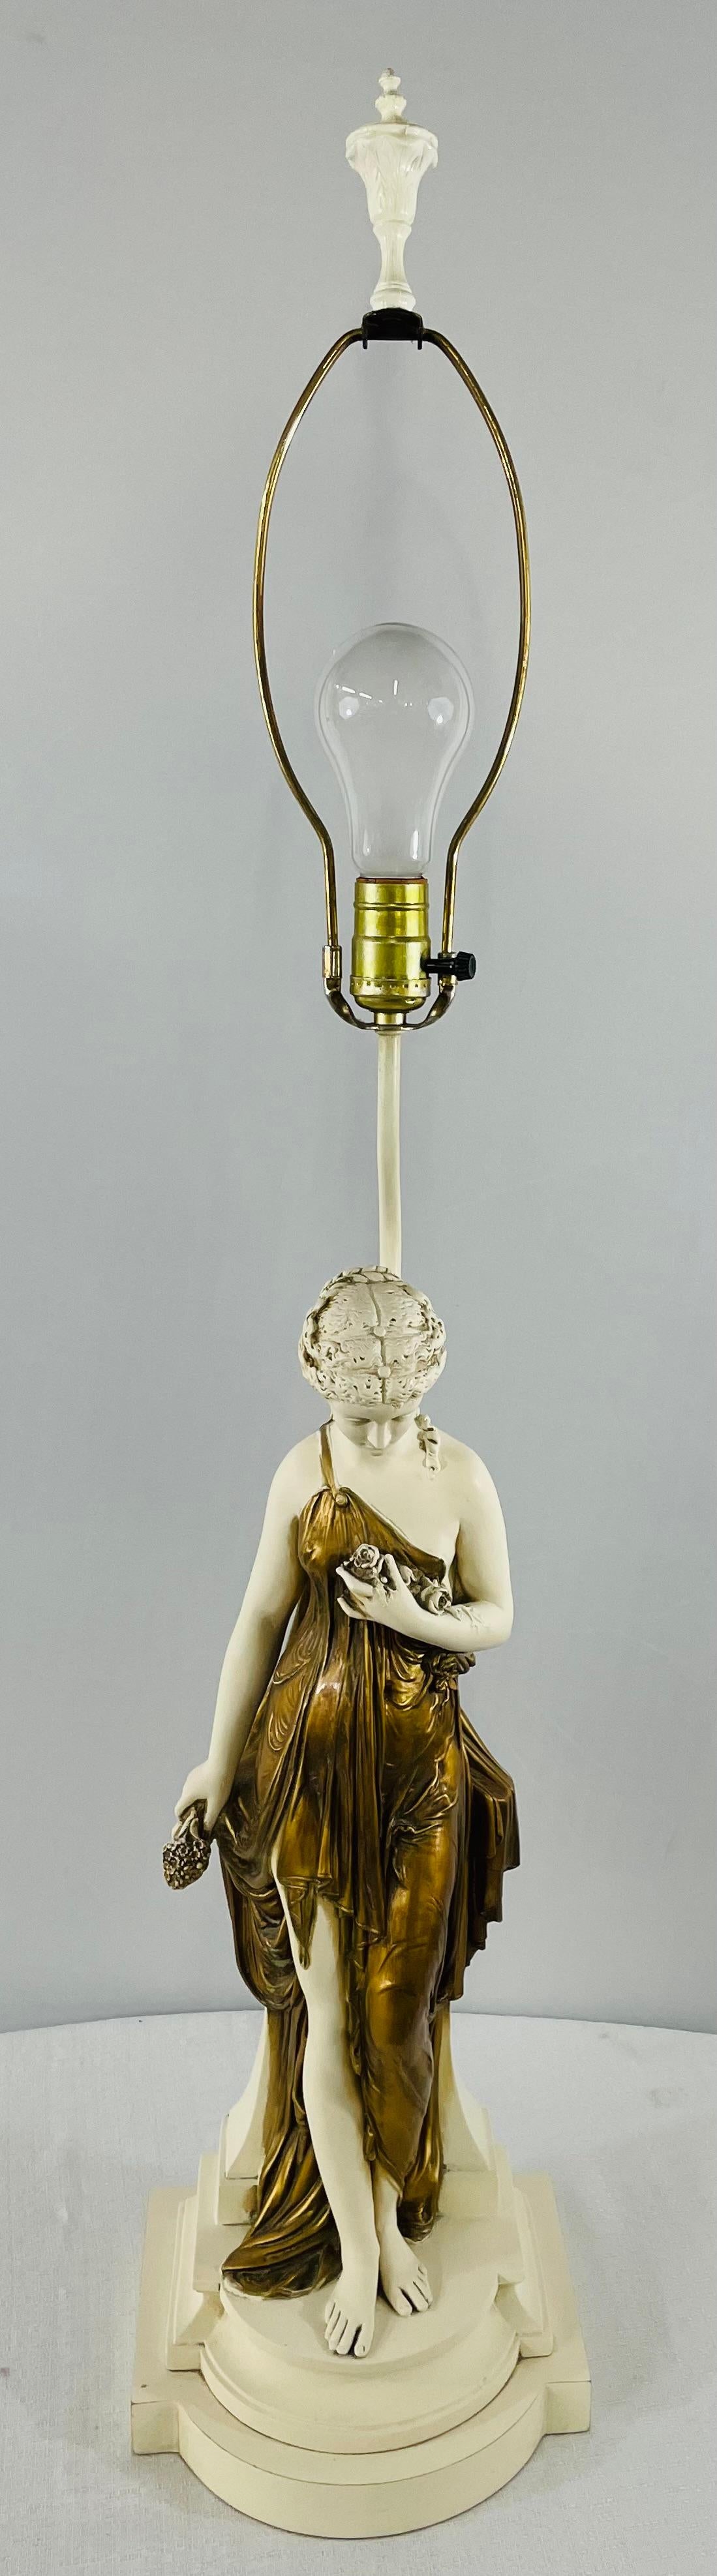 Une exquise grande lampe sculpture de Nymphe féminine Art Nouveau en porcelaine. La nymphe est enveloppée d'une robe dorée et tient un bouquet de fleurs en regardant vers le bas. La sculpture repose sur un socle signé GRANITEX sur le côté. Granitex